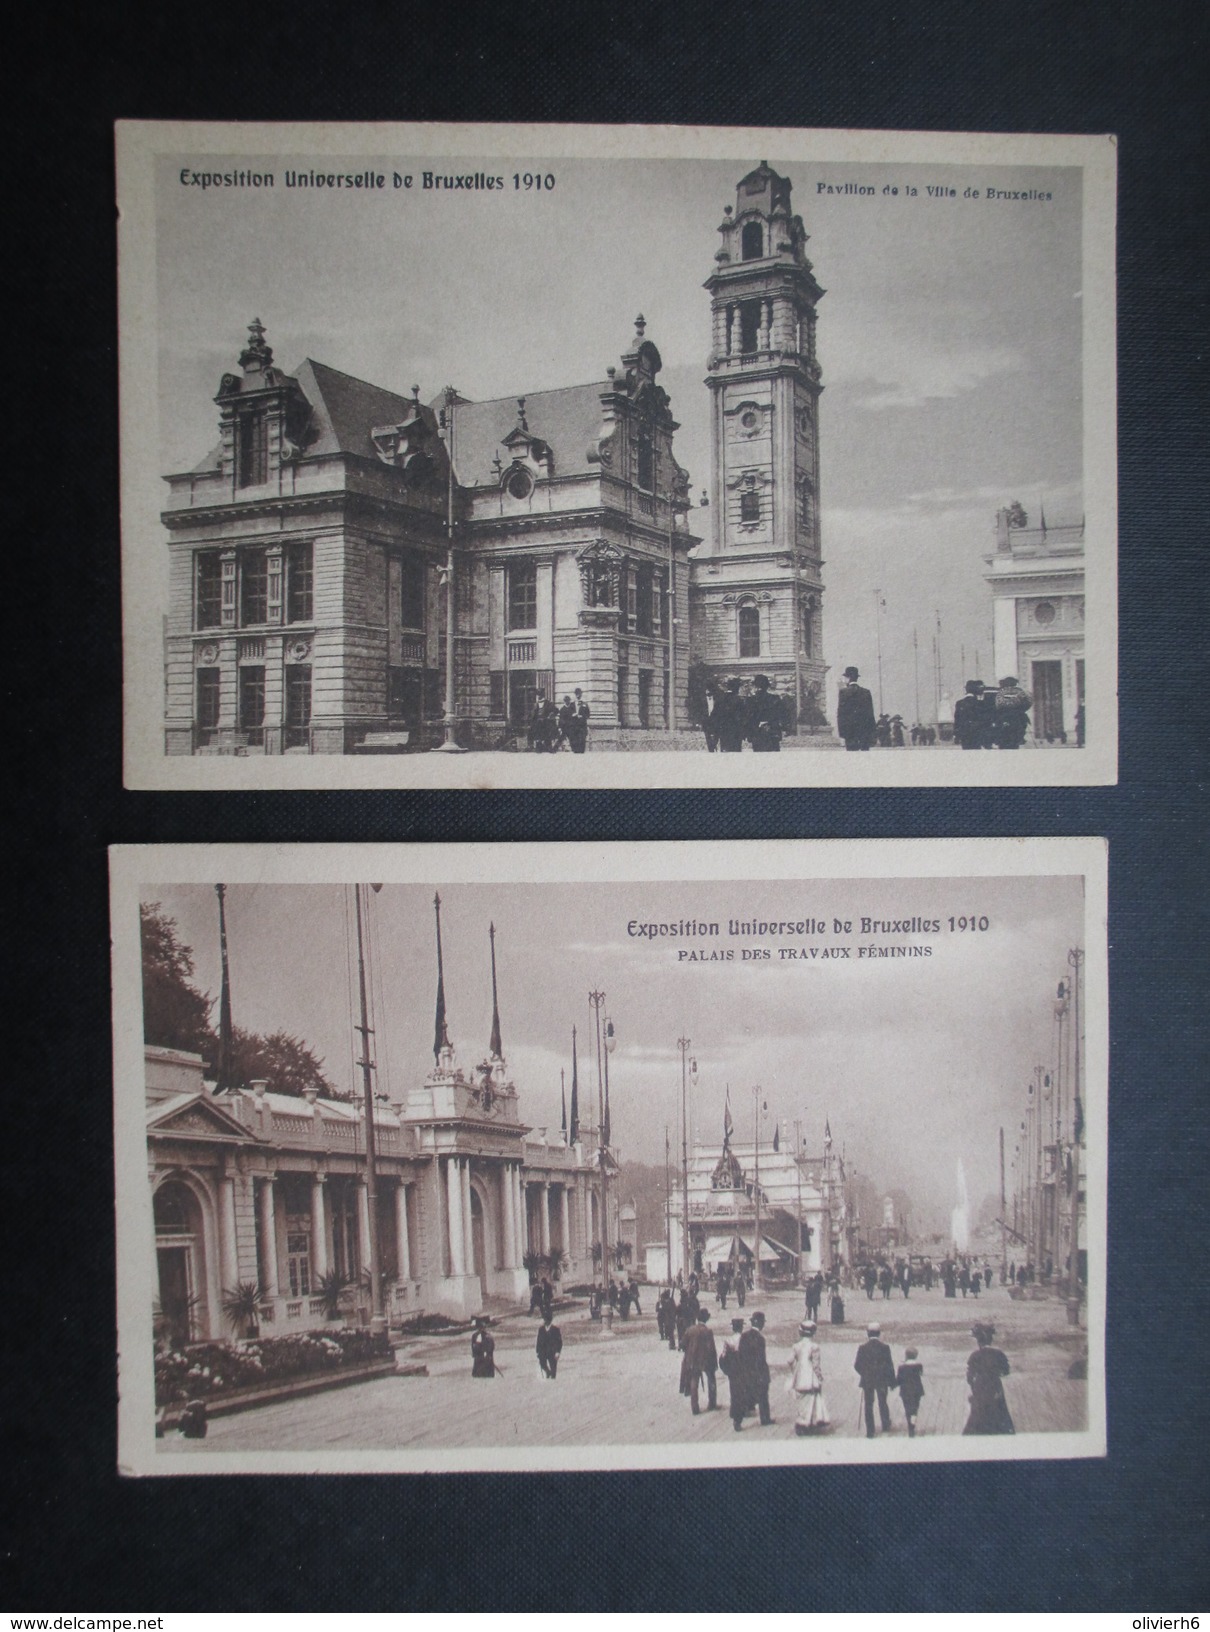 LOT 32 CP EXPOSITION UNIVERSELLE (V1708) BELGIQUE 1910 (33 vues) Dujardin Lammens, Village sénégalais, Pavillons, Nuit